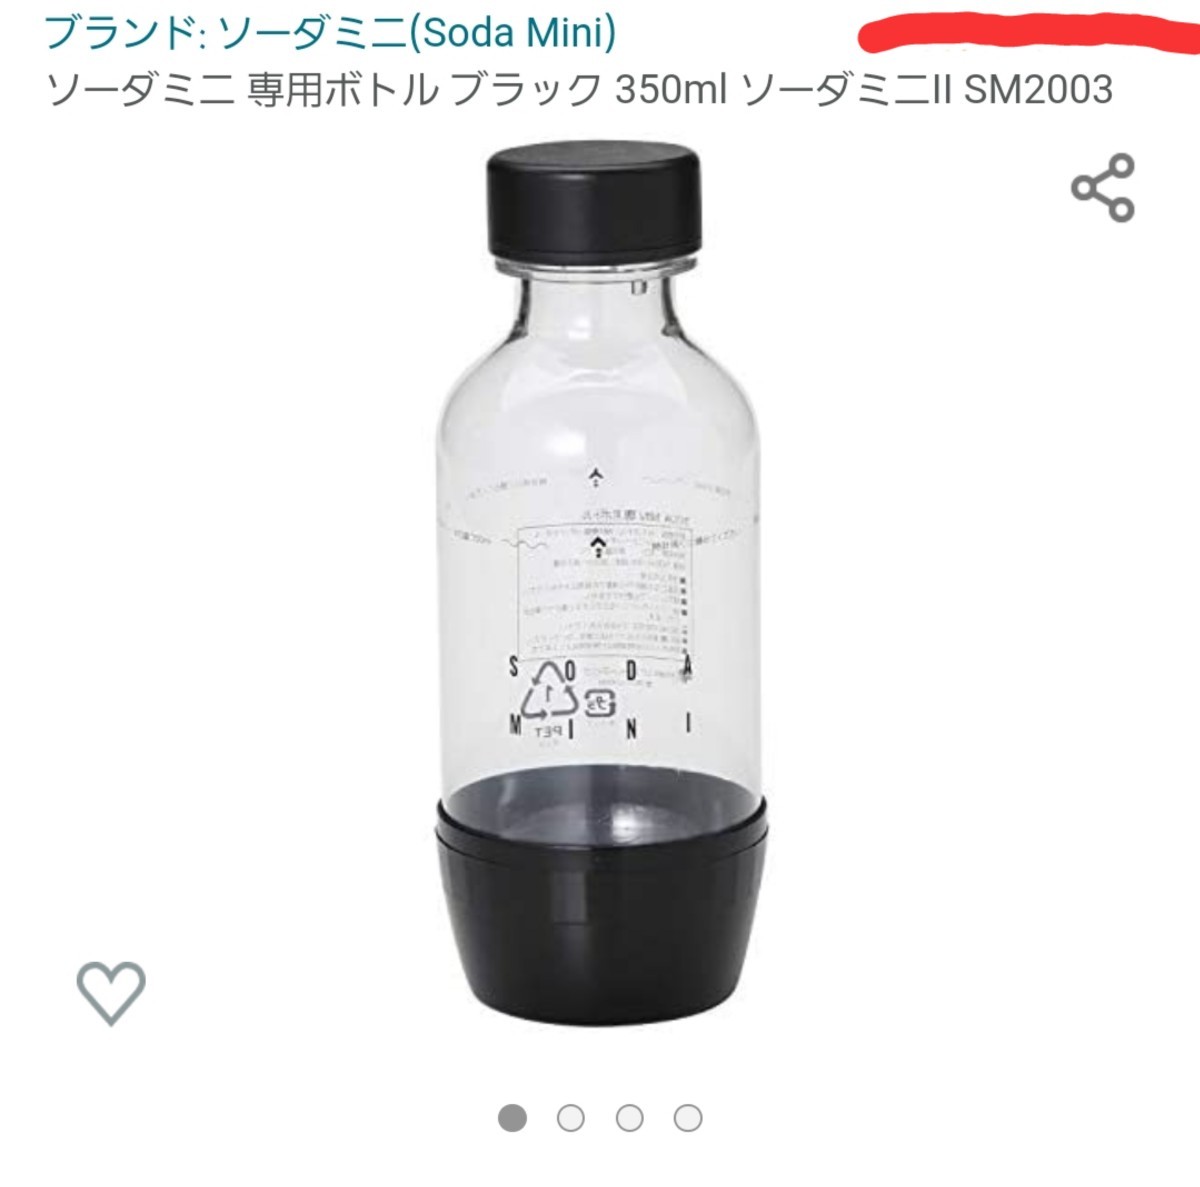 ソーダミニ 専用ボトル ブラック 350m